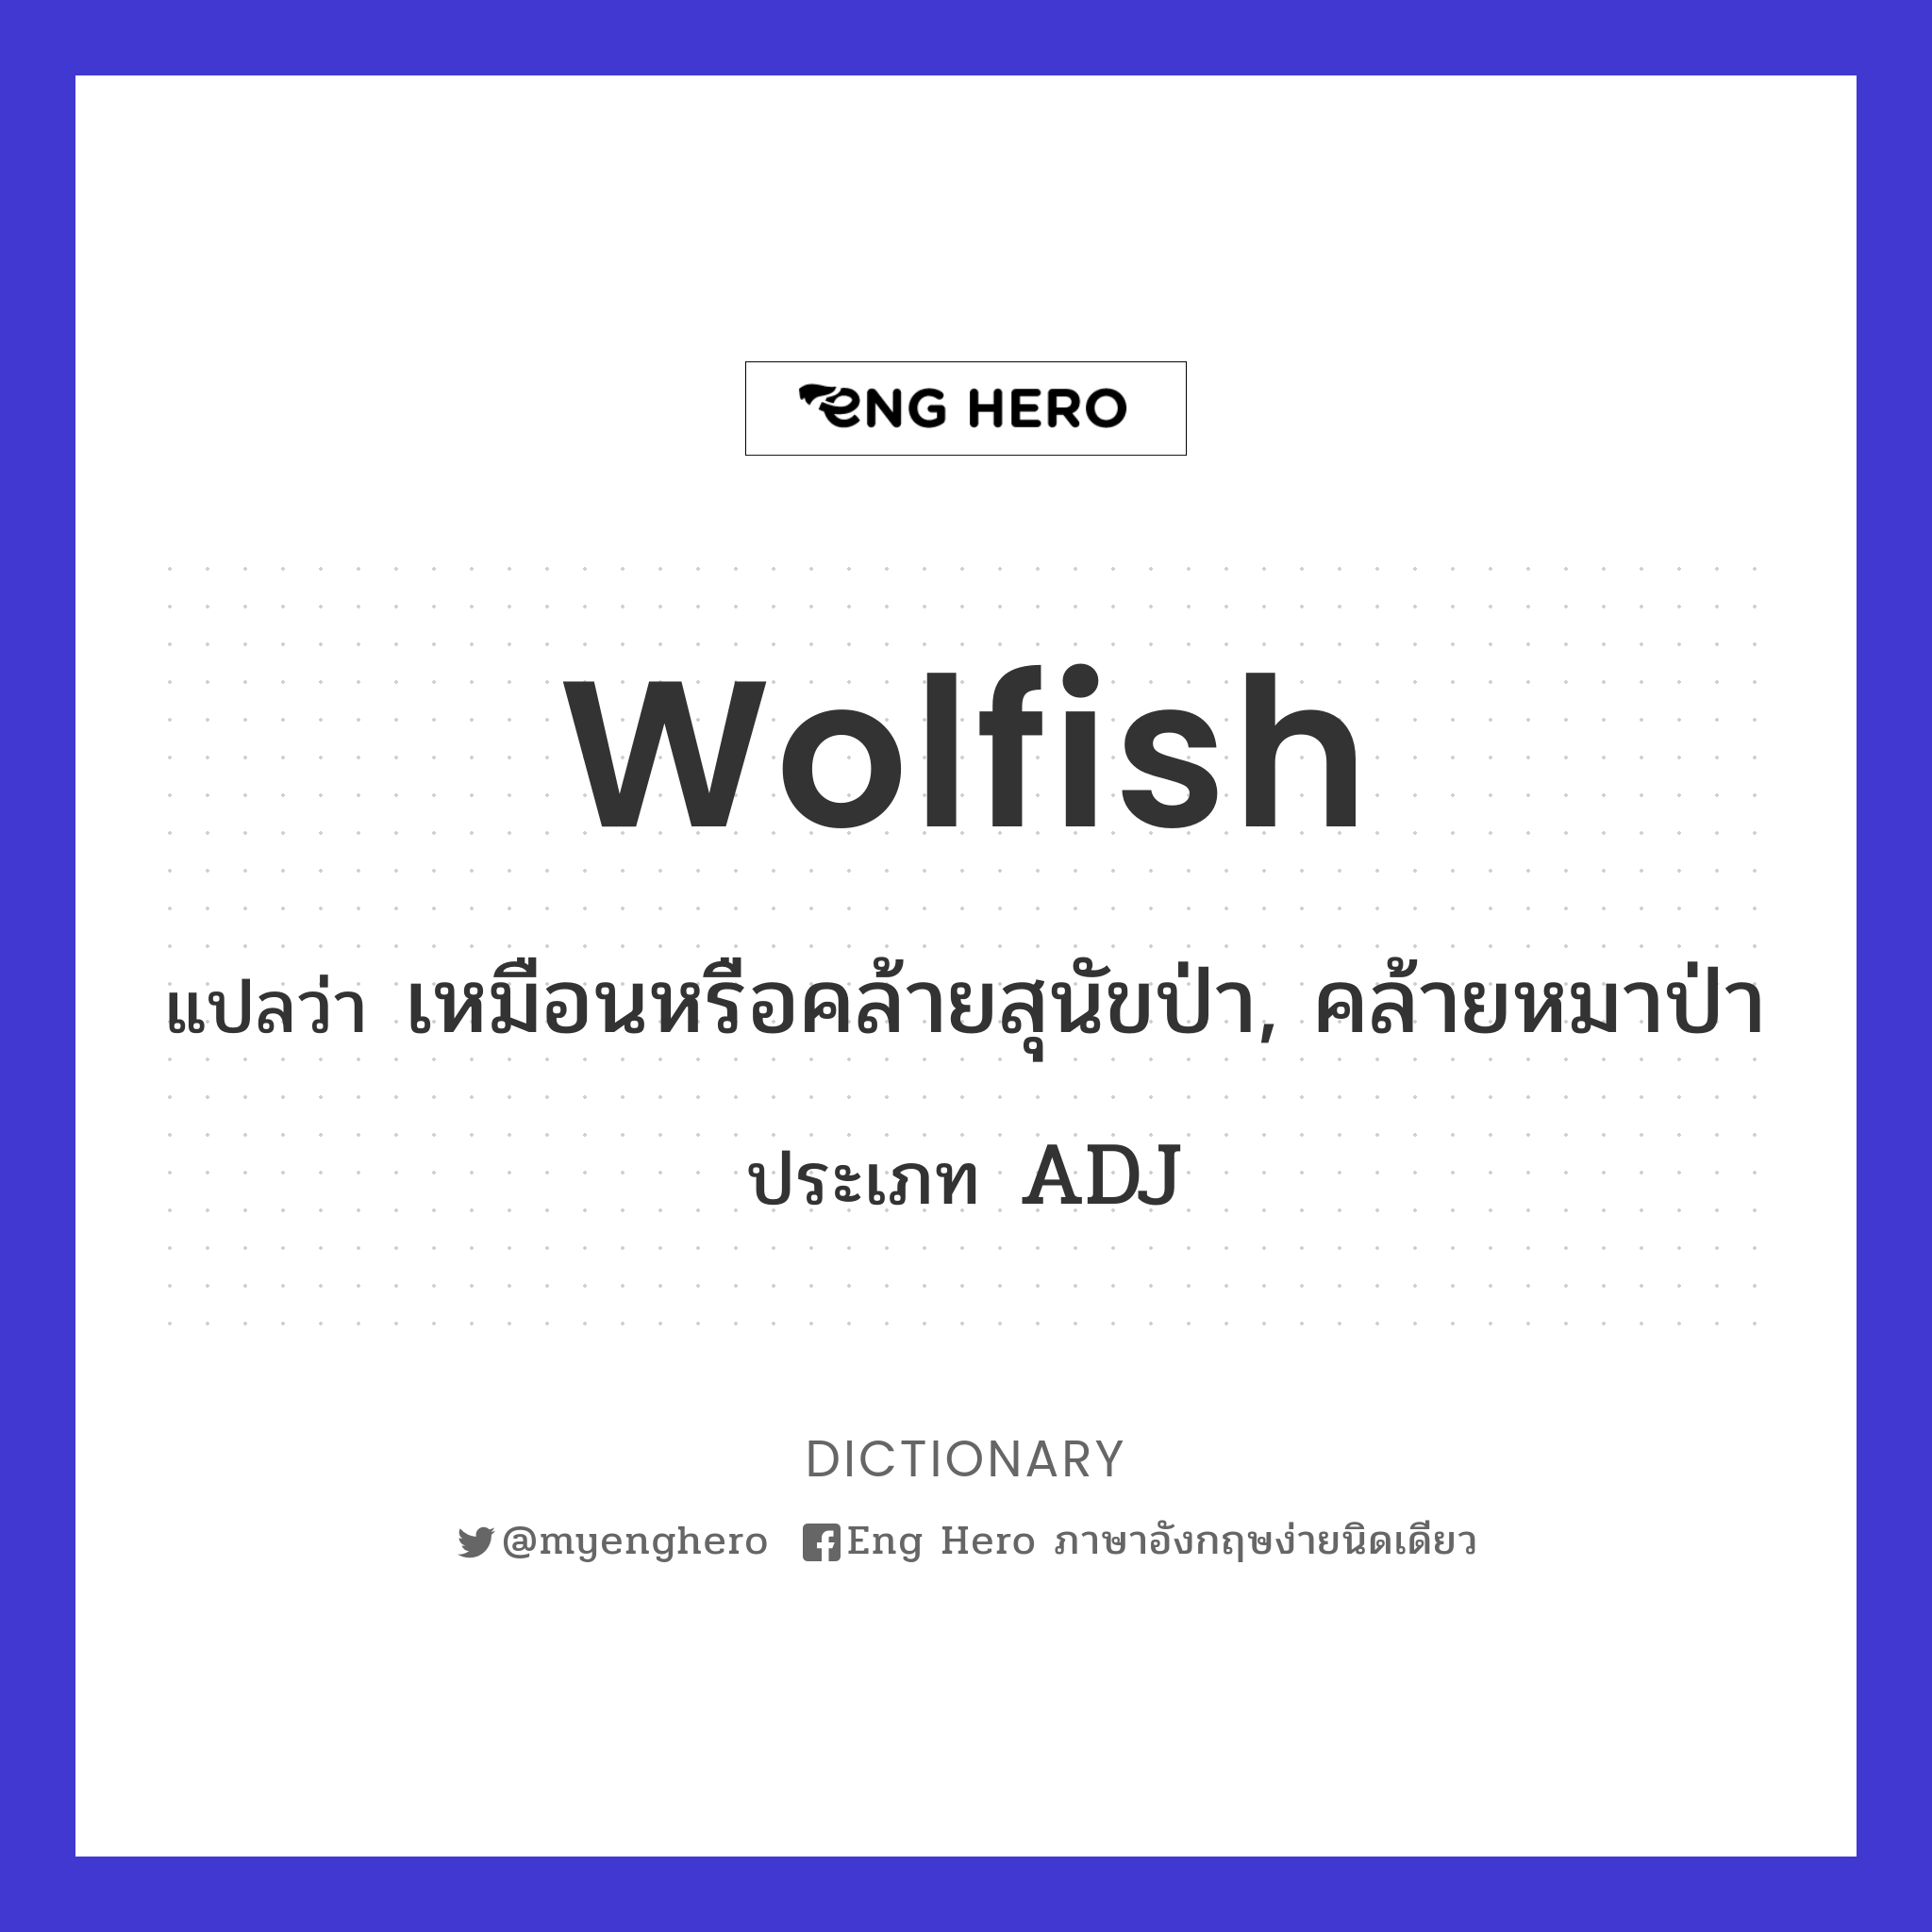 wolfish